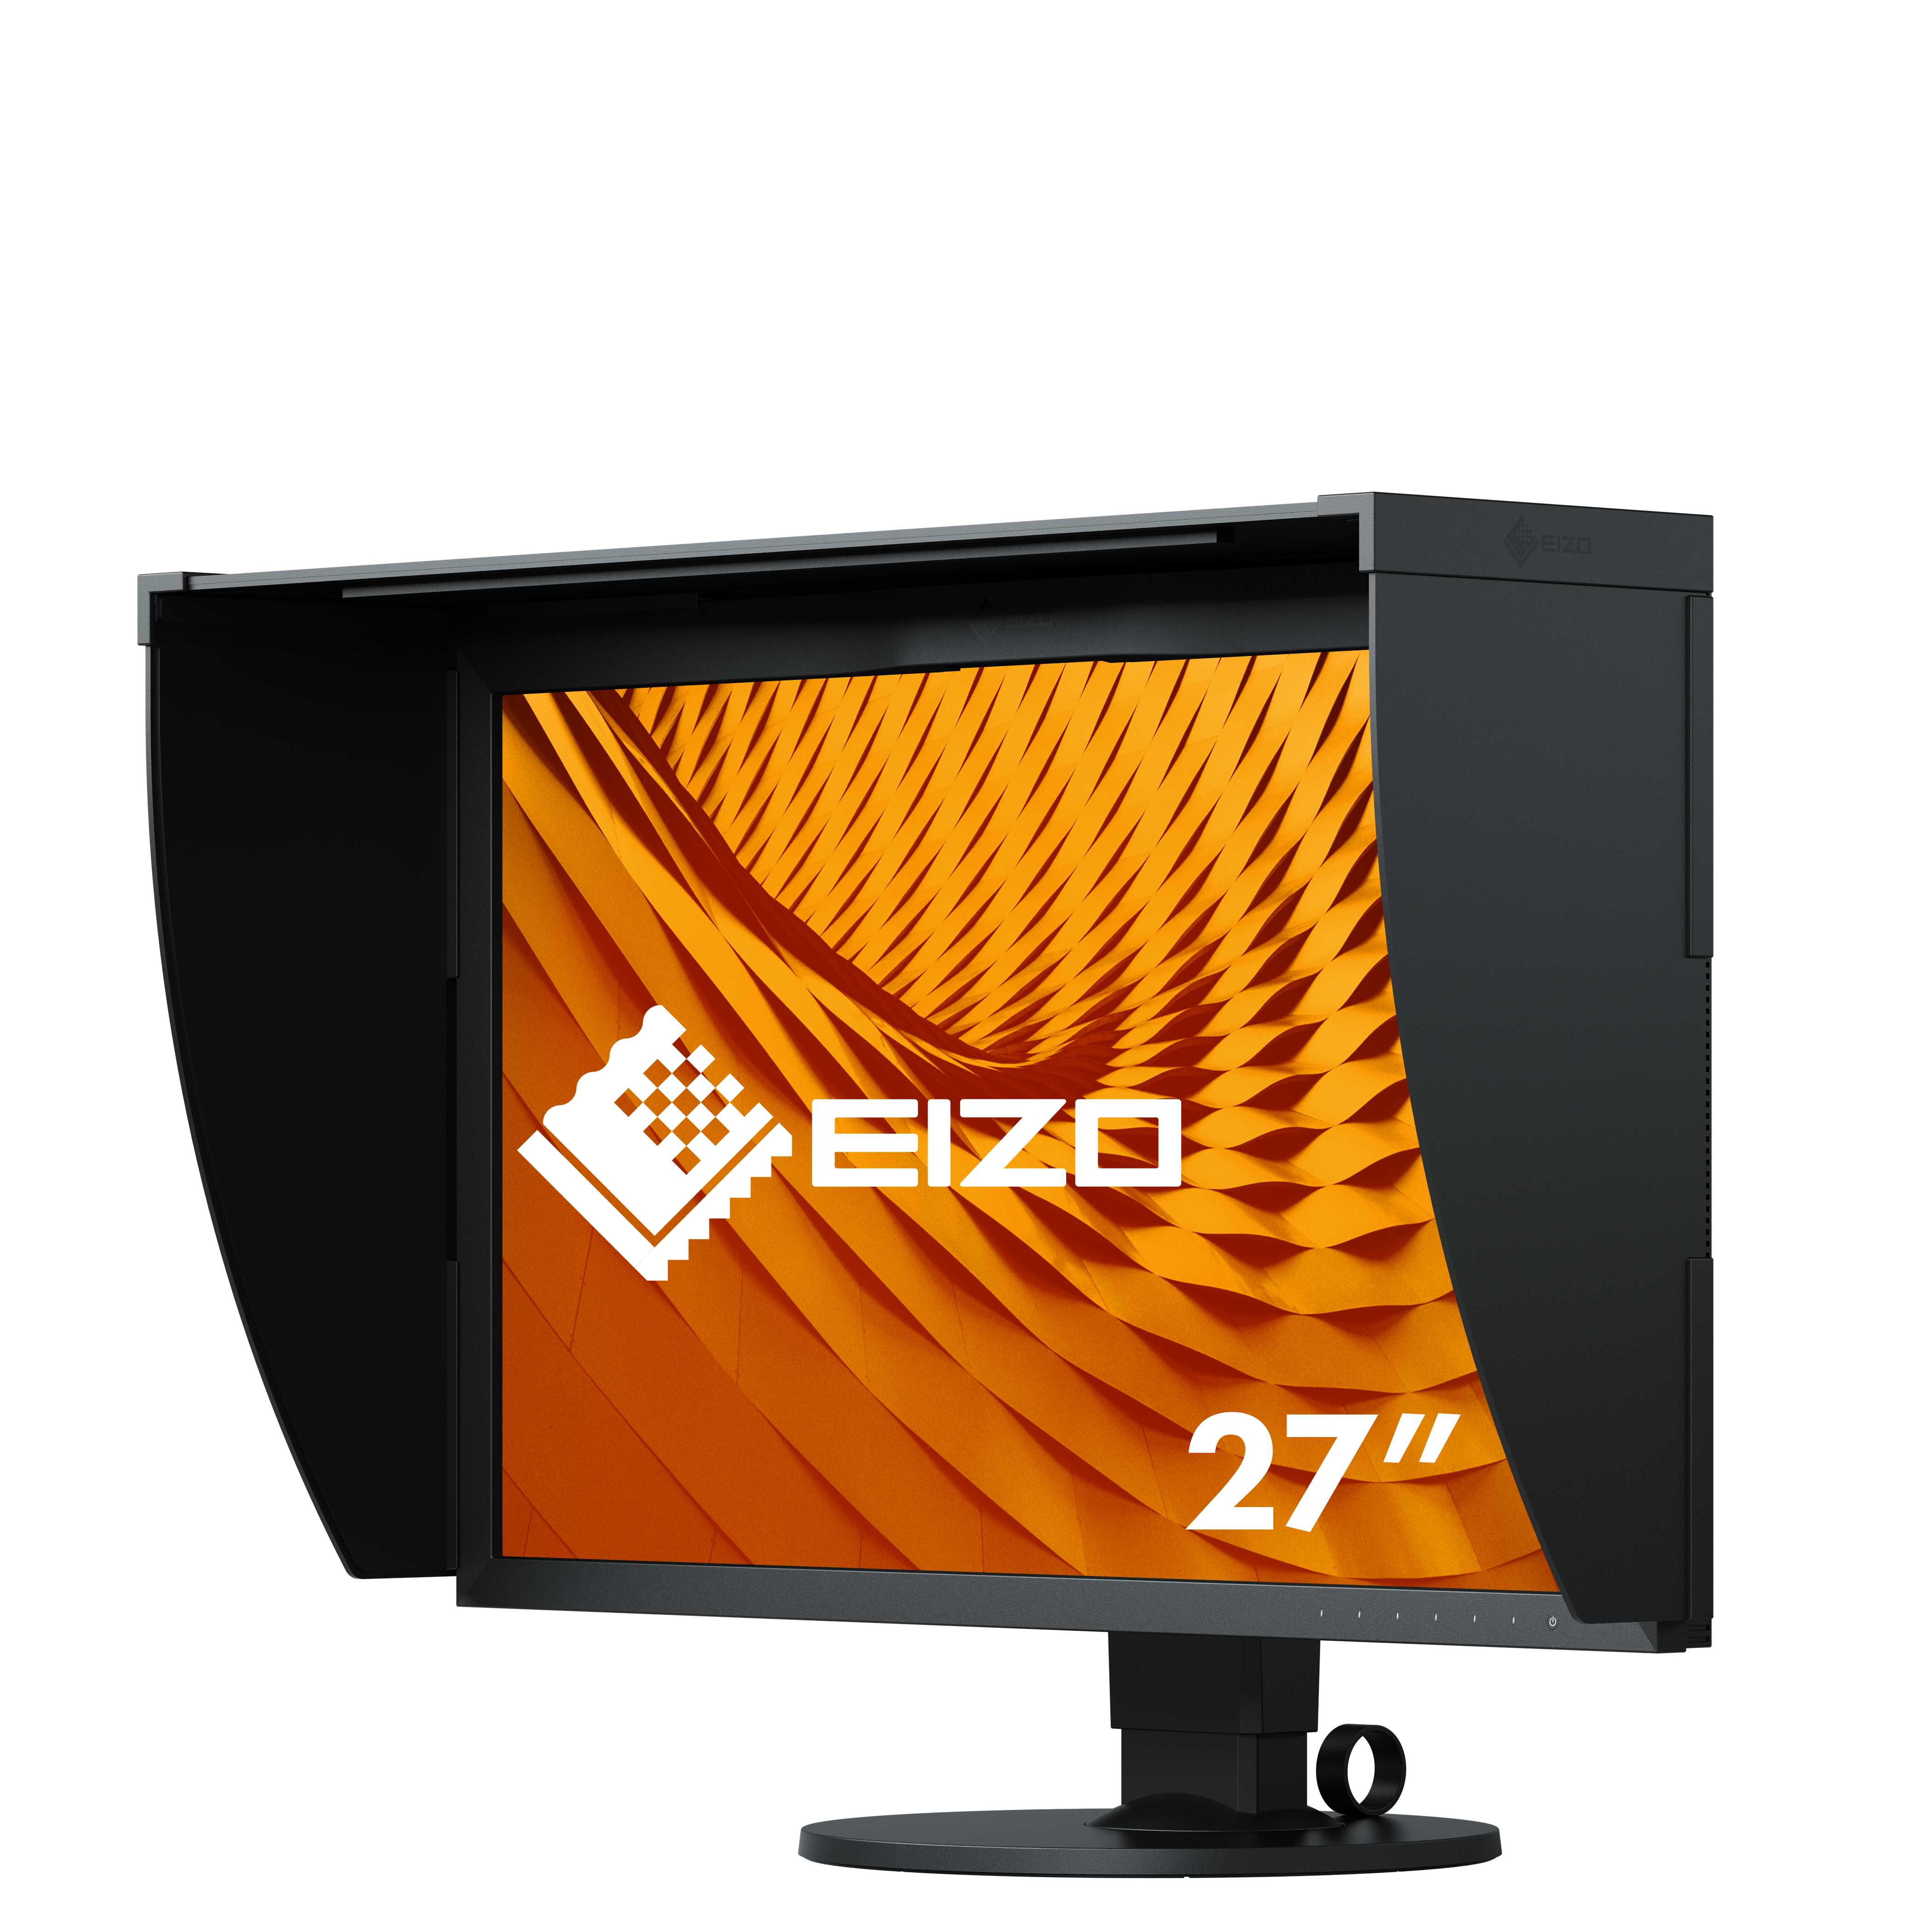 EIZO ColorEdge CG279X monitor piatto per PC 68,6 cm (27